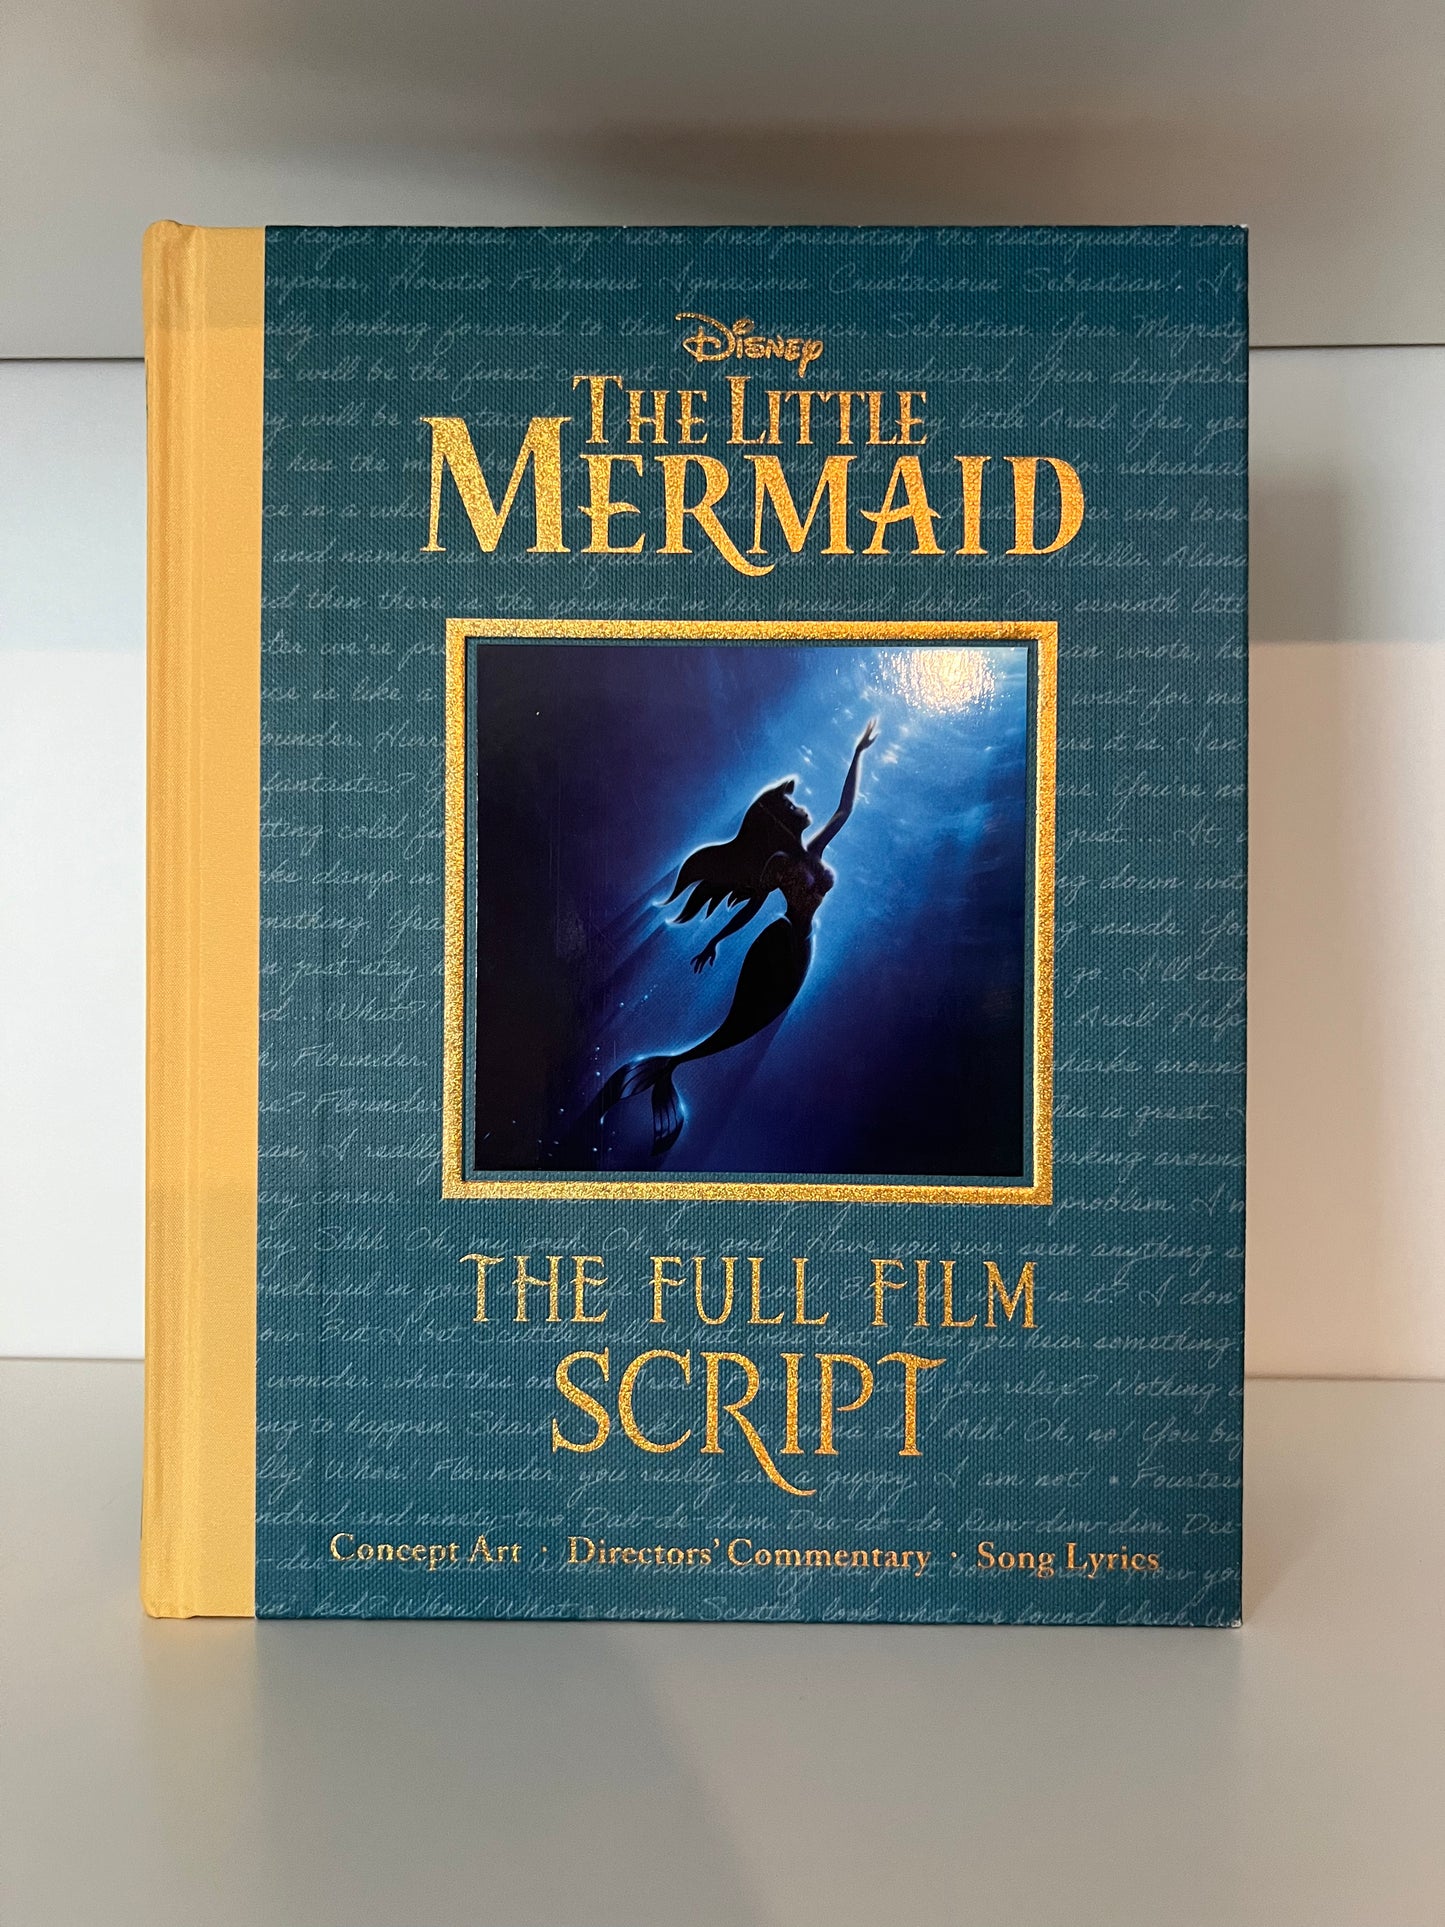 The Little Mermaid: The Full Film Script